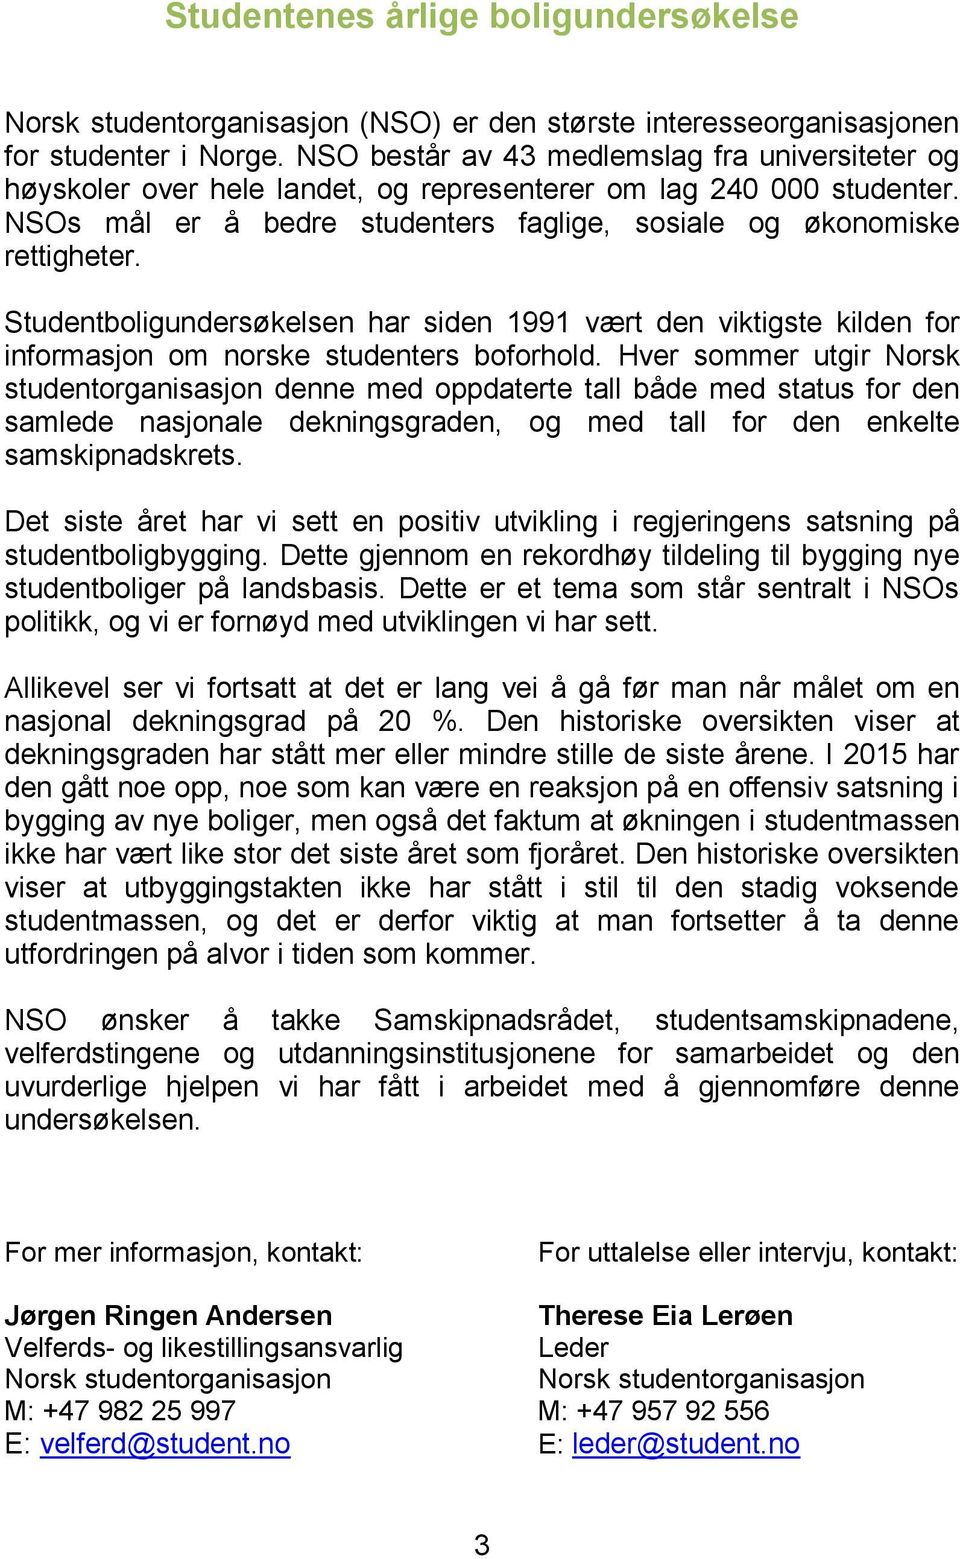 Studentboligundersøkelsen har siden 1991 vært den viktigste kilden for informasjon om norske studenters boforhold.